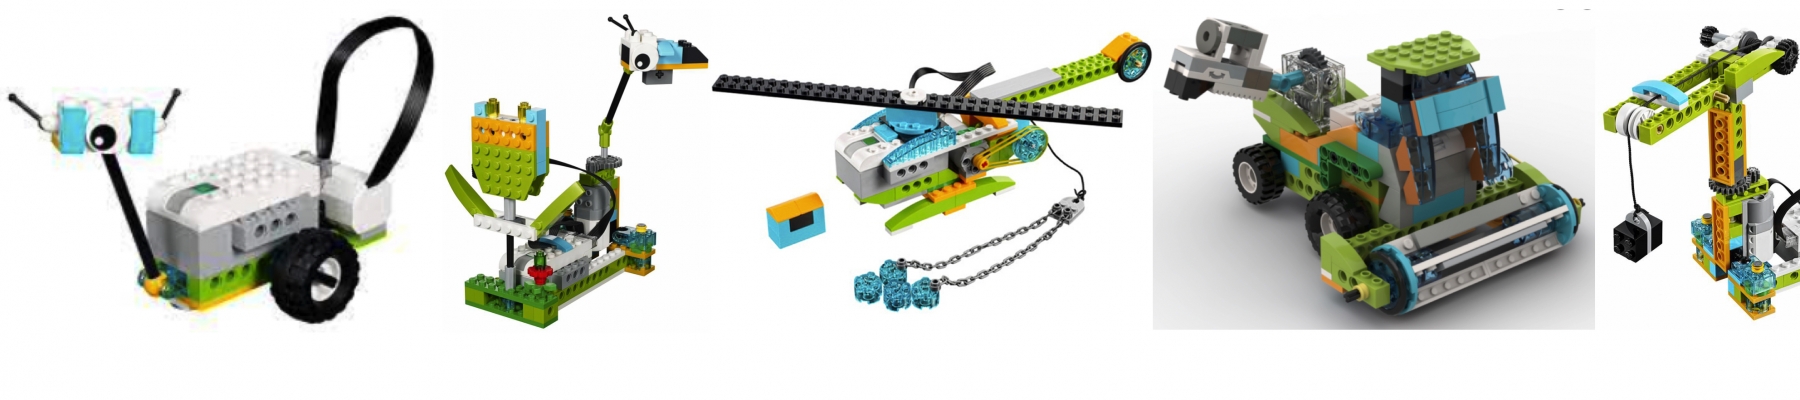 ROBOT BOUWEN MET LEGO WEDO (3 februari)